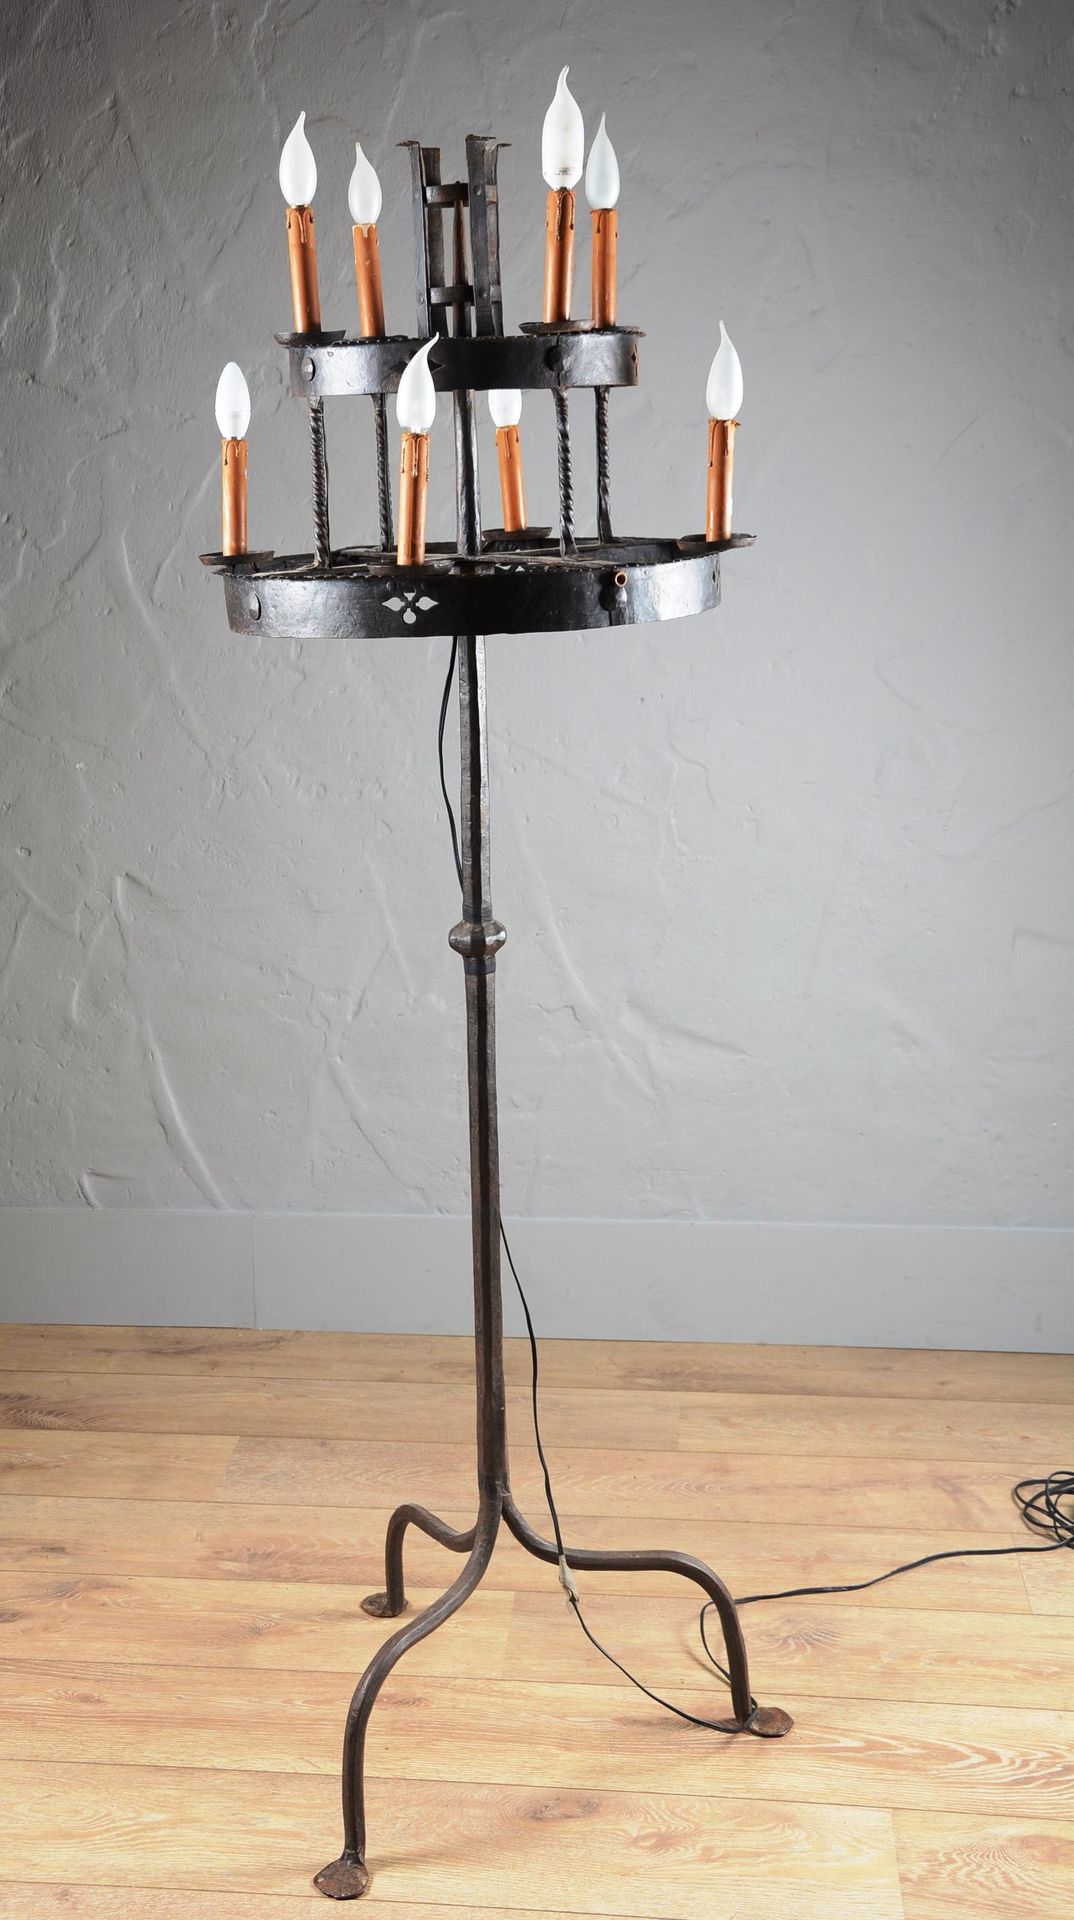 Null 锻铁的高烛台。

有两排蜡烛。

身高：173厘米。